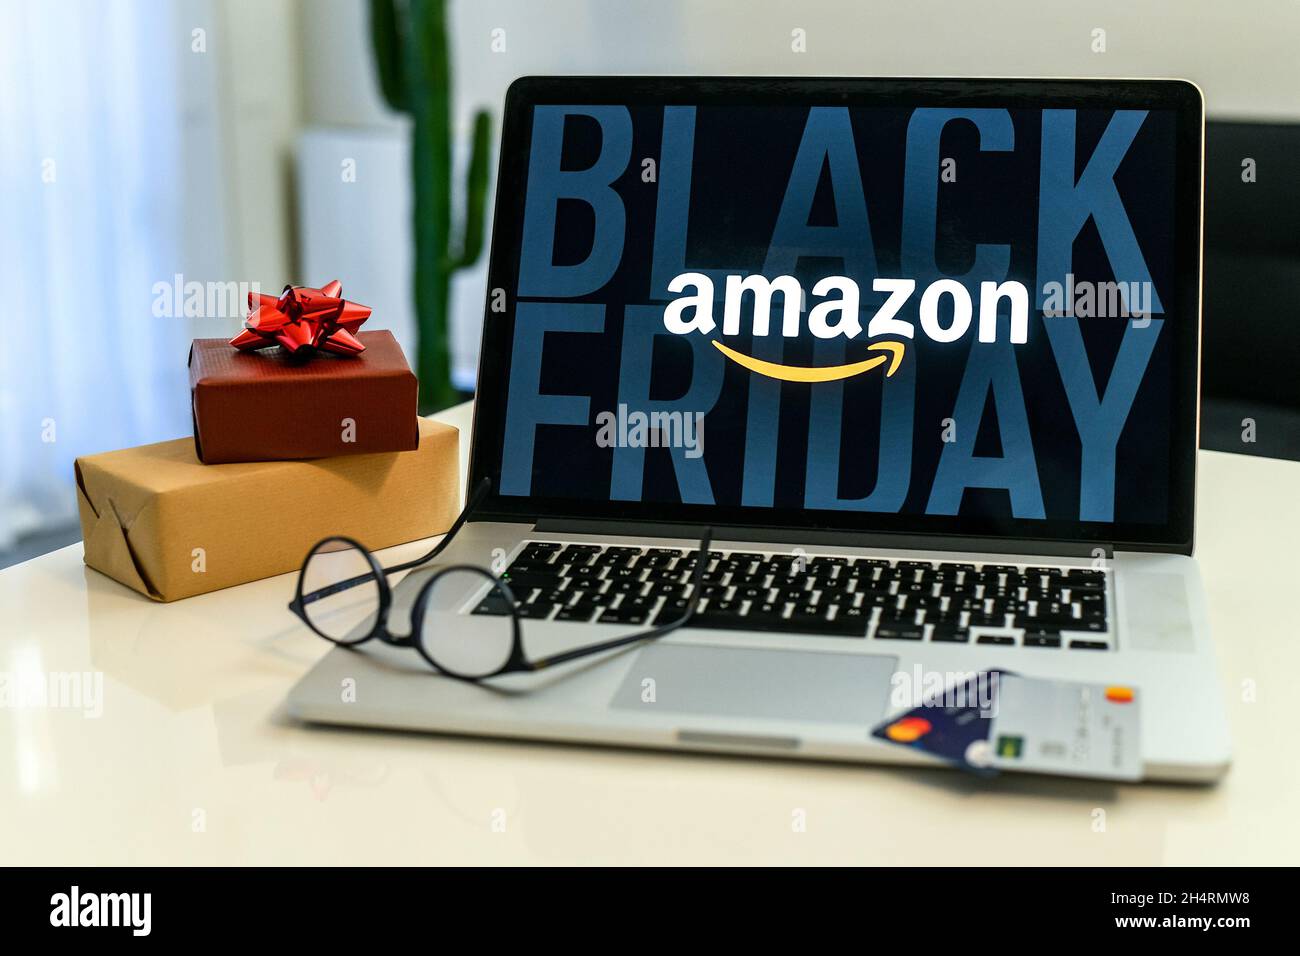 Acheter un cadeau de Noël dans la boutique en ligne Amazon le vendredi  noir.Sur l'écran de l'ordinateur portable.Achat de cadeaux de  Noël.E-commerce, technologie, shopp Photo Stock - Alamy